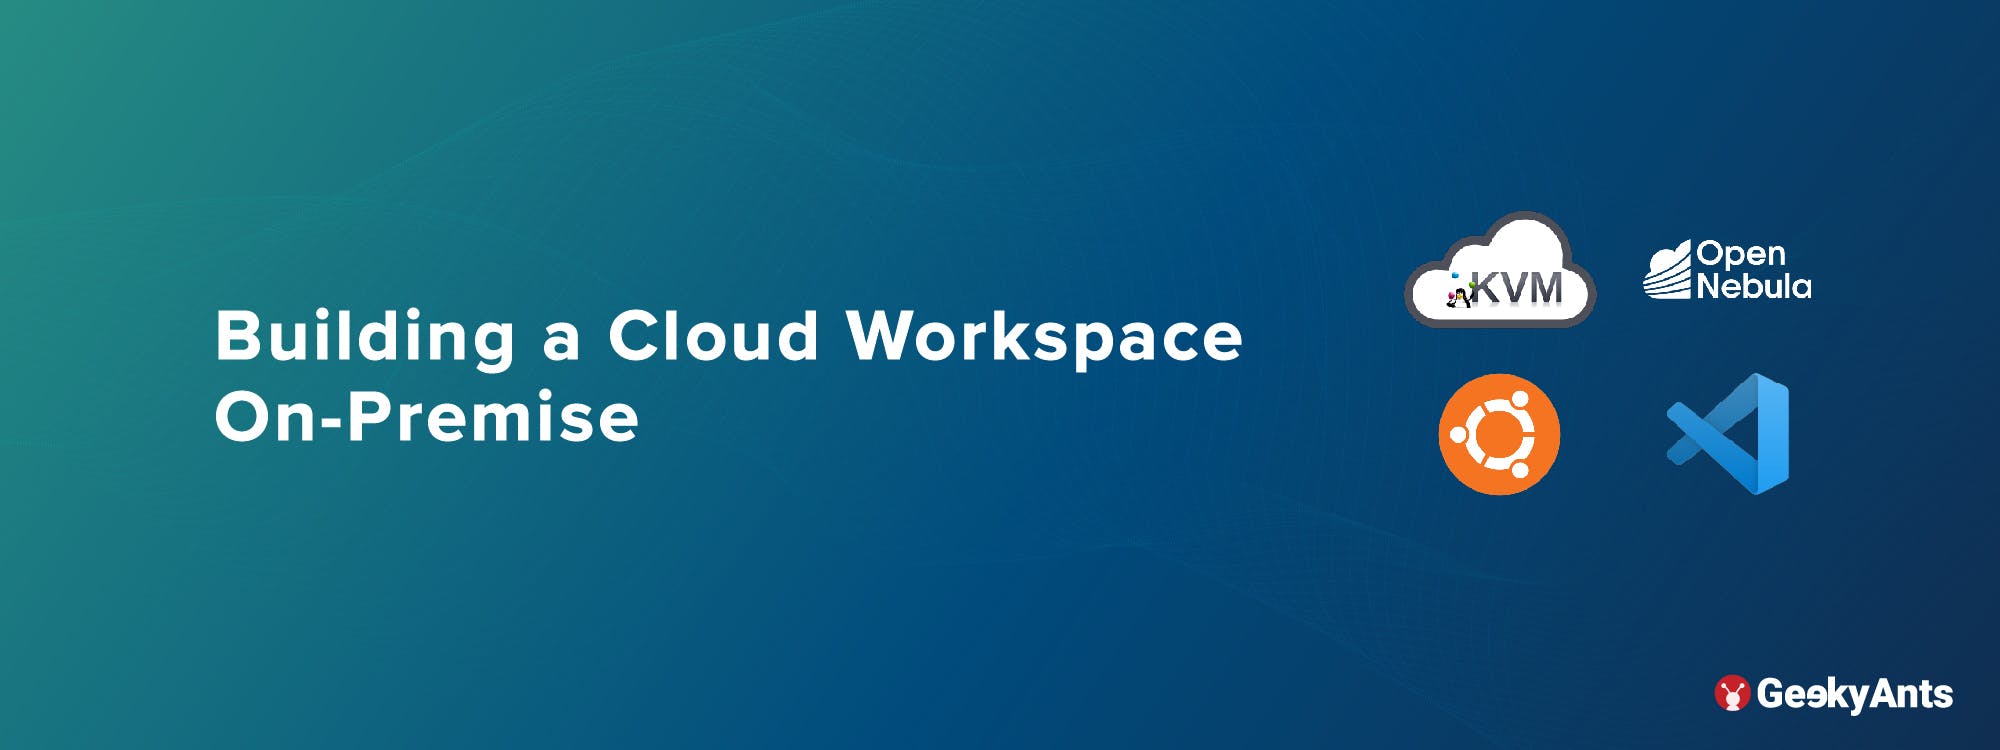 Building a Cloud Workspace On-Premise